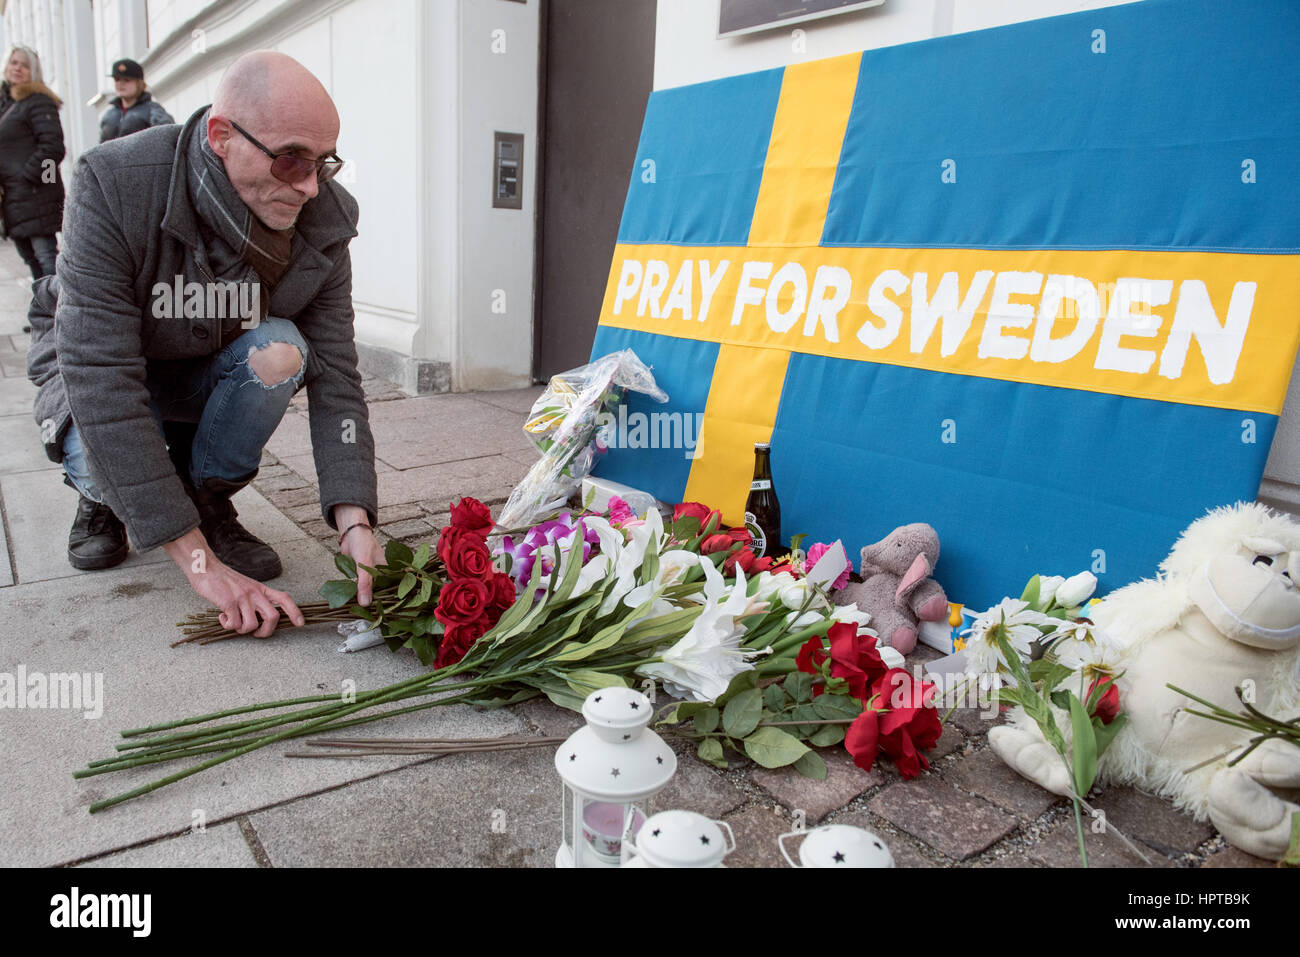 Una stima di 100 persone raccolte al di fuori dell'Ambasciata Svedese a Copenaghen, di prendere parte ad una simulazione di memorial a mostrare solidarietà con la Svezia, nel corso di un evento che non era mai accaduto. La settimana scorsa il presidente statunitense Donald Trump ha detto, "guardare a ciò che è accaduto la scorsa notte in Svezia" durante un discorso condannando l'immigrazione musulmana nei paesi occidentali. Perplesso svedesi hanno sostenuto che la serata in questione era tranquillo. Per evidenziare l'errore, l'artista danese Artpusher (nella foto in posa di fiori) ha organizzato una veglia mock. Foto Stock